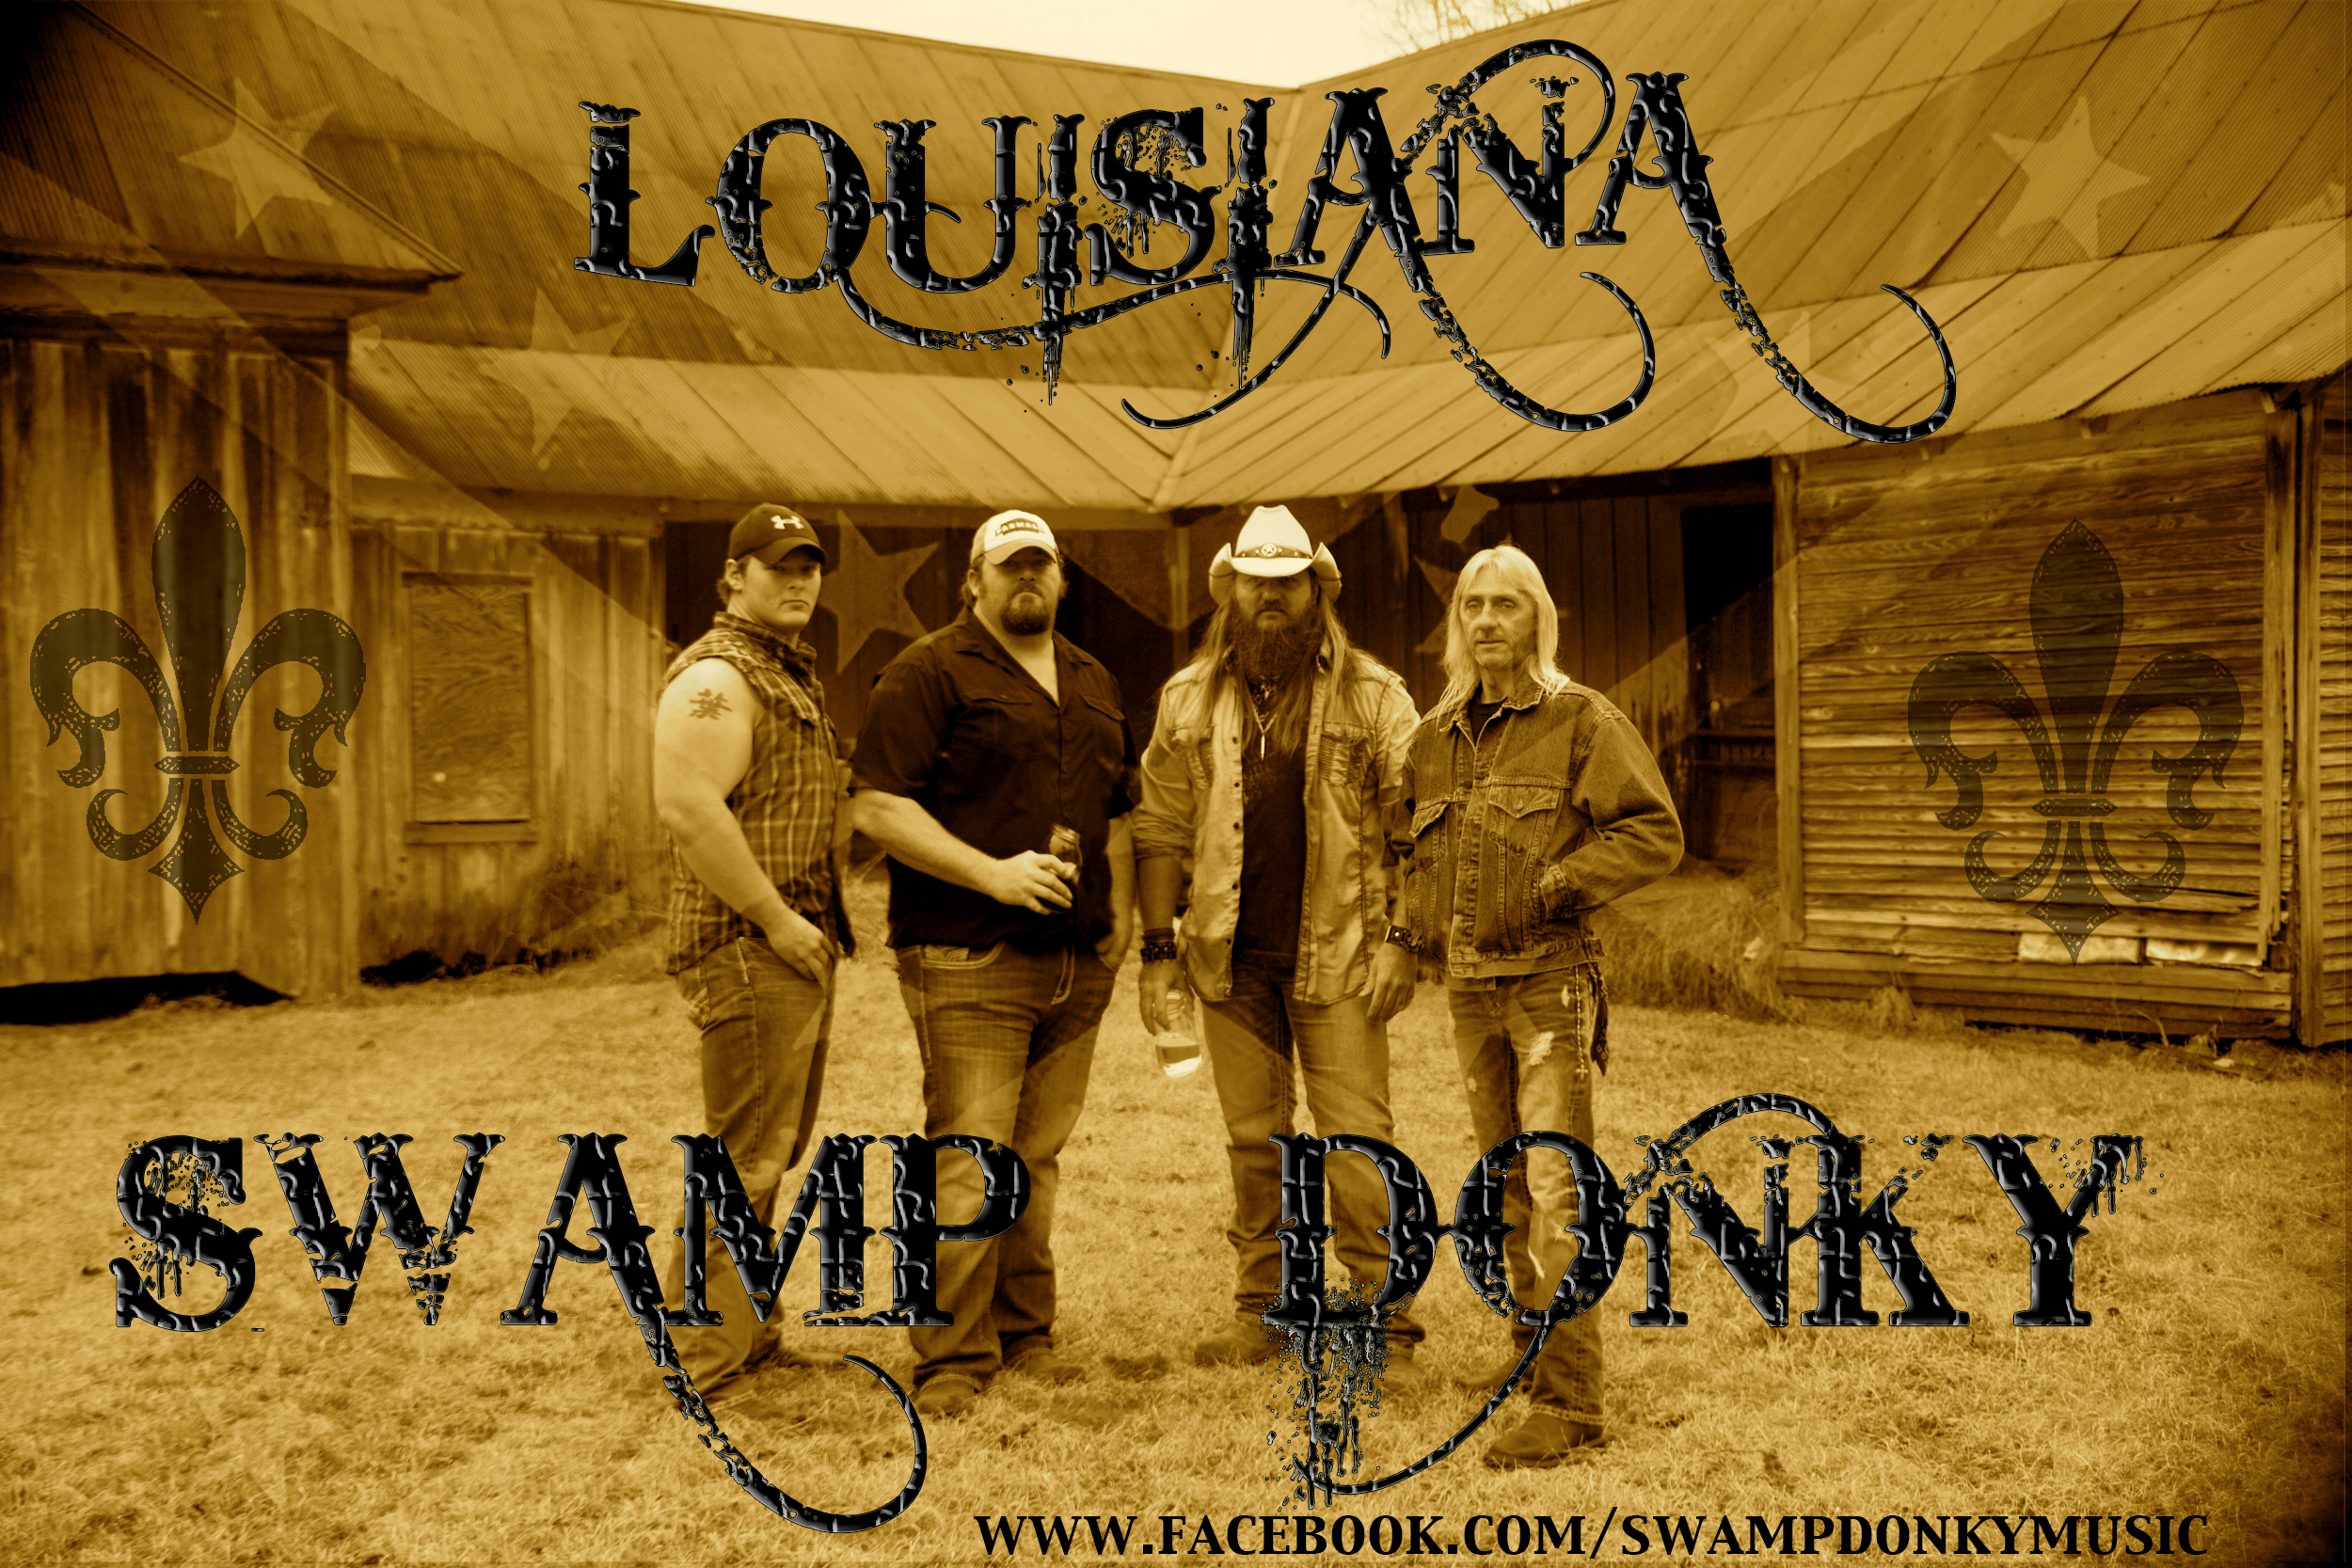 Louisiana Swamp Donky